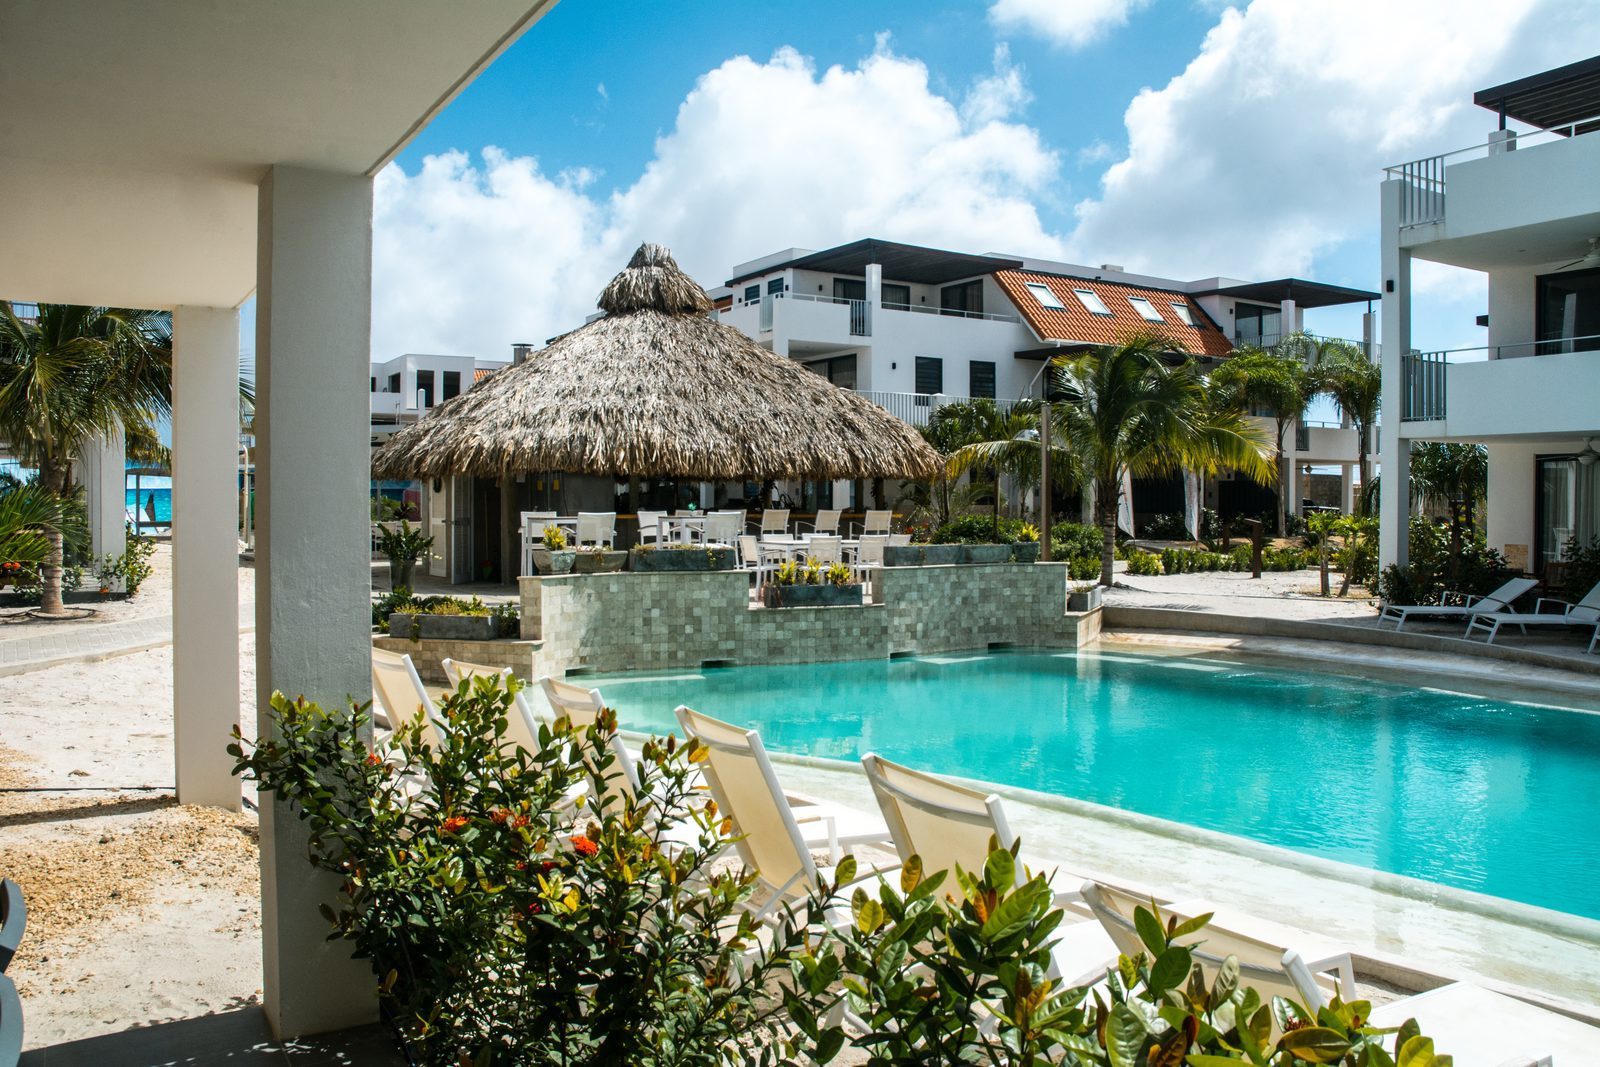 Procura um resort em Bonaire? O Resort Bonaire oferece uma magnífica piscina e apartamentos luxuosos.